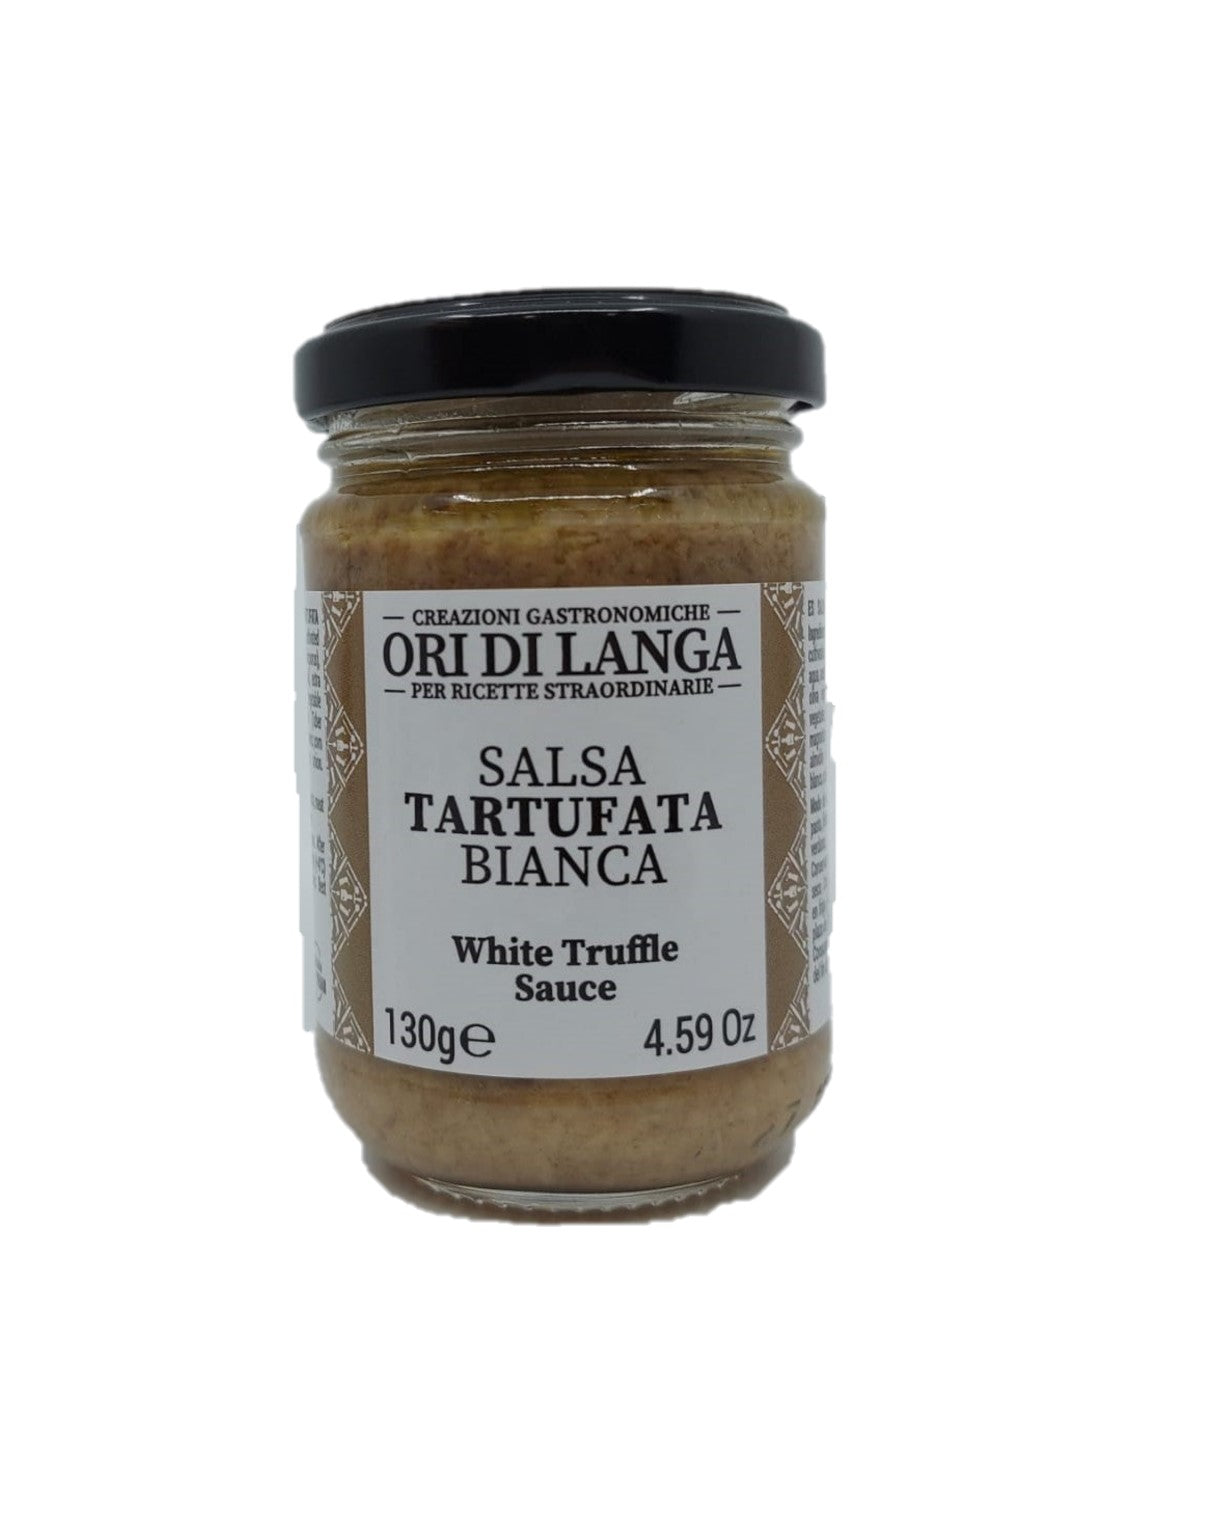 White truffle sauce (130g)